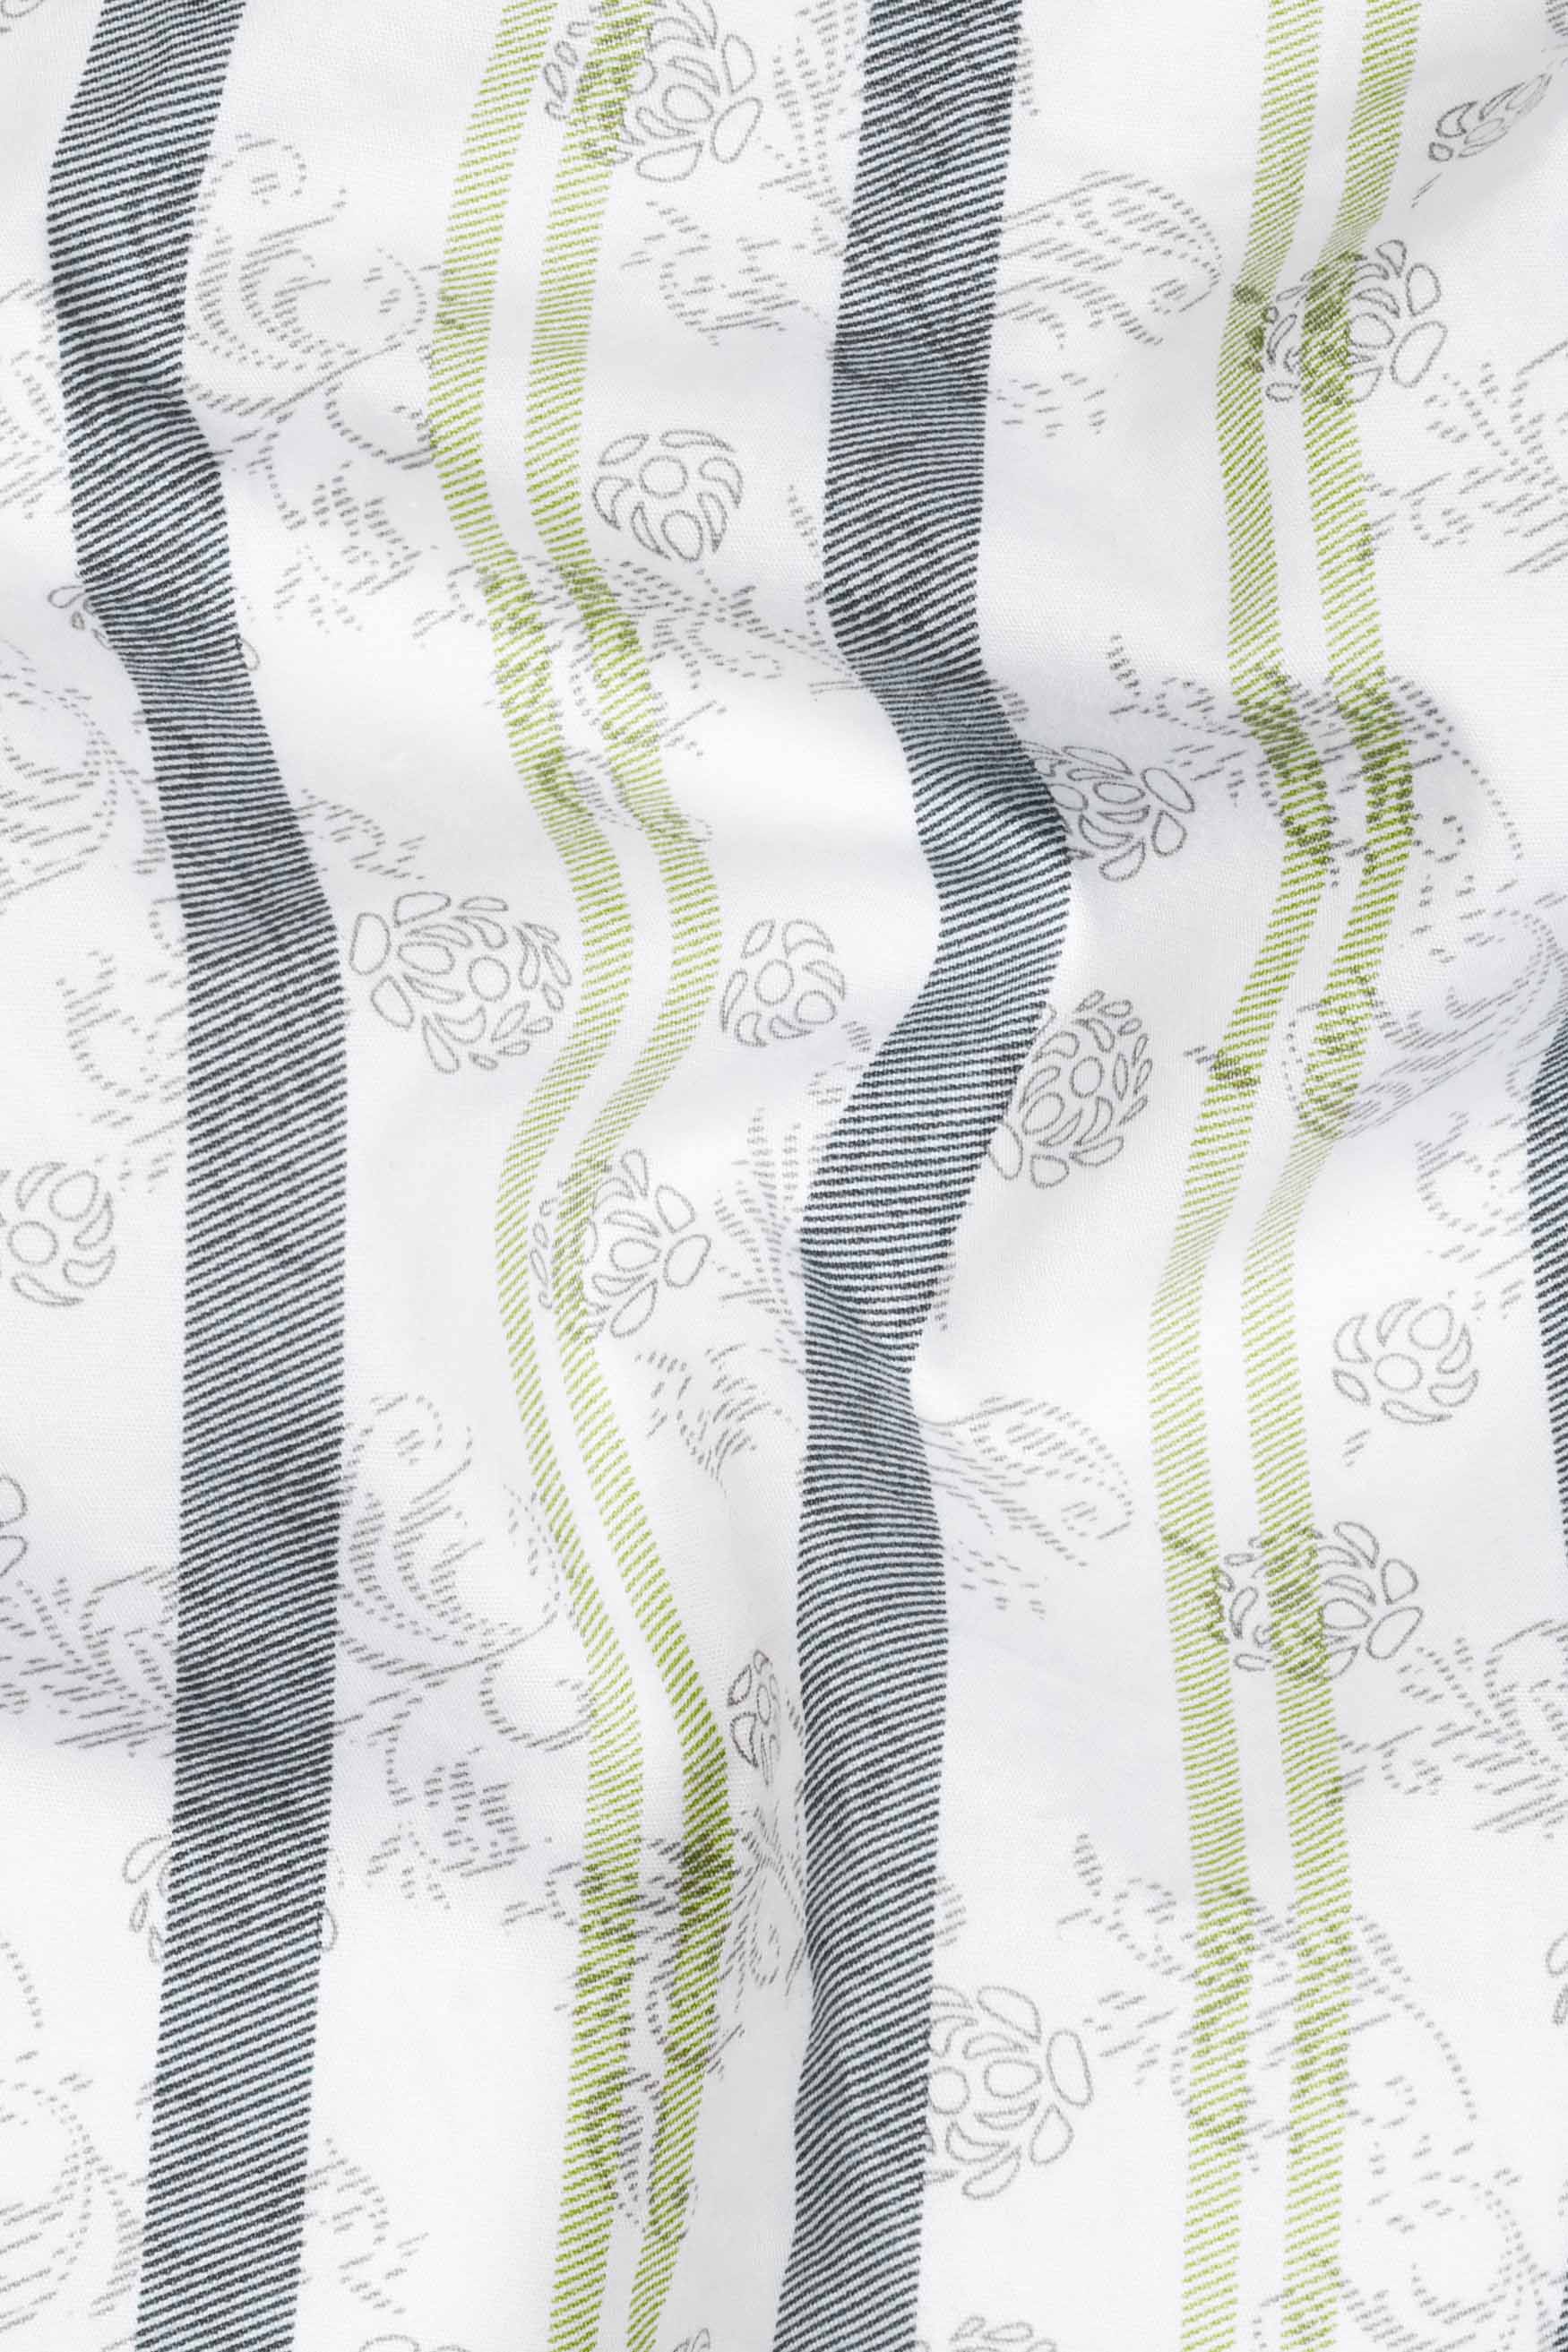 Bright White Multicoloured Striped Super Soft Premium Cotton Kurta Shirt